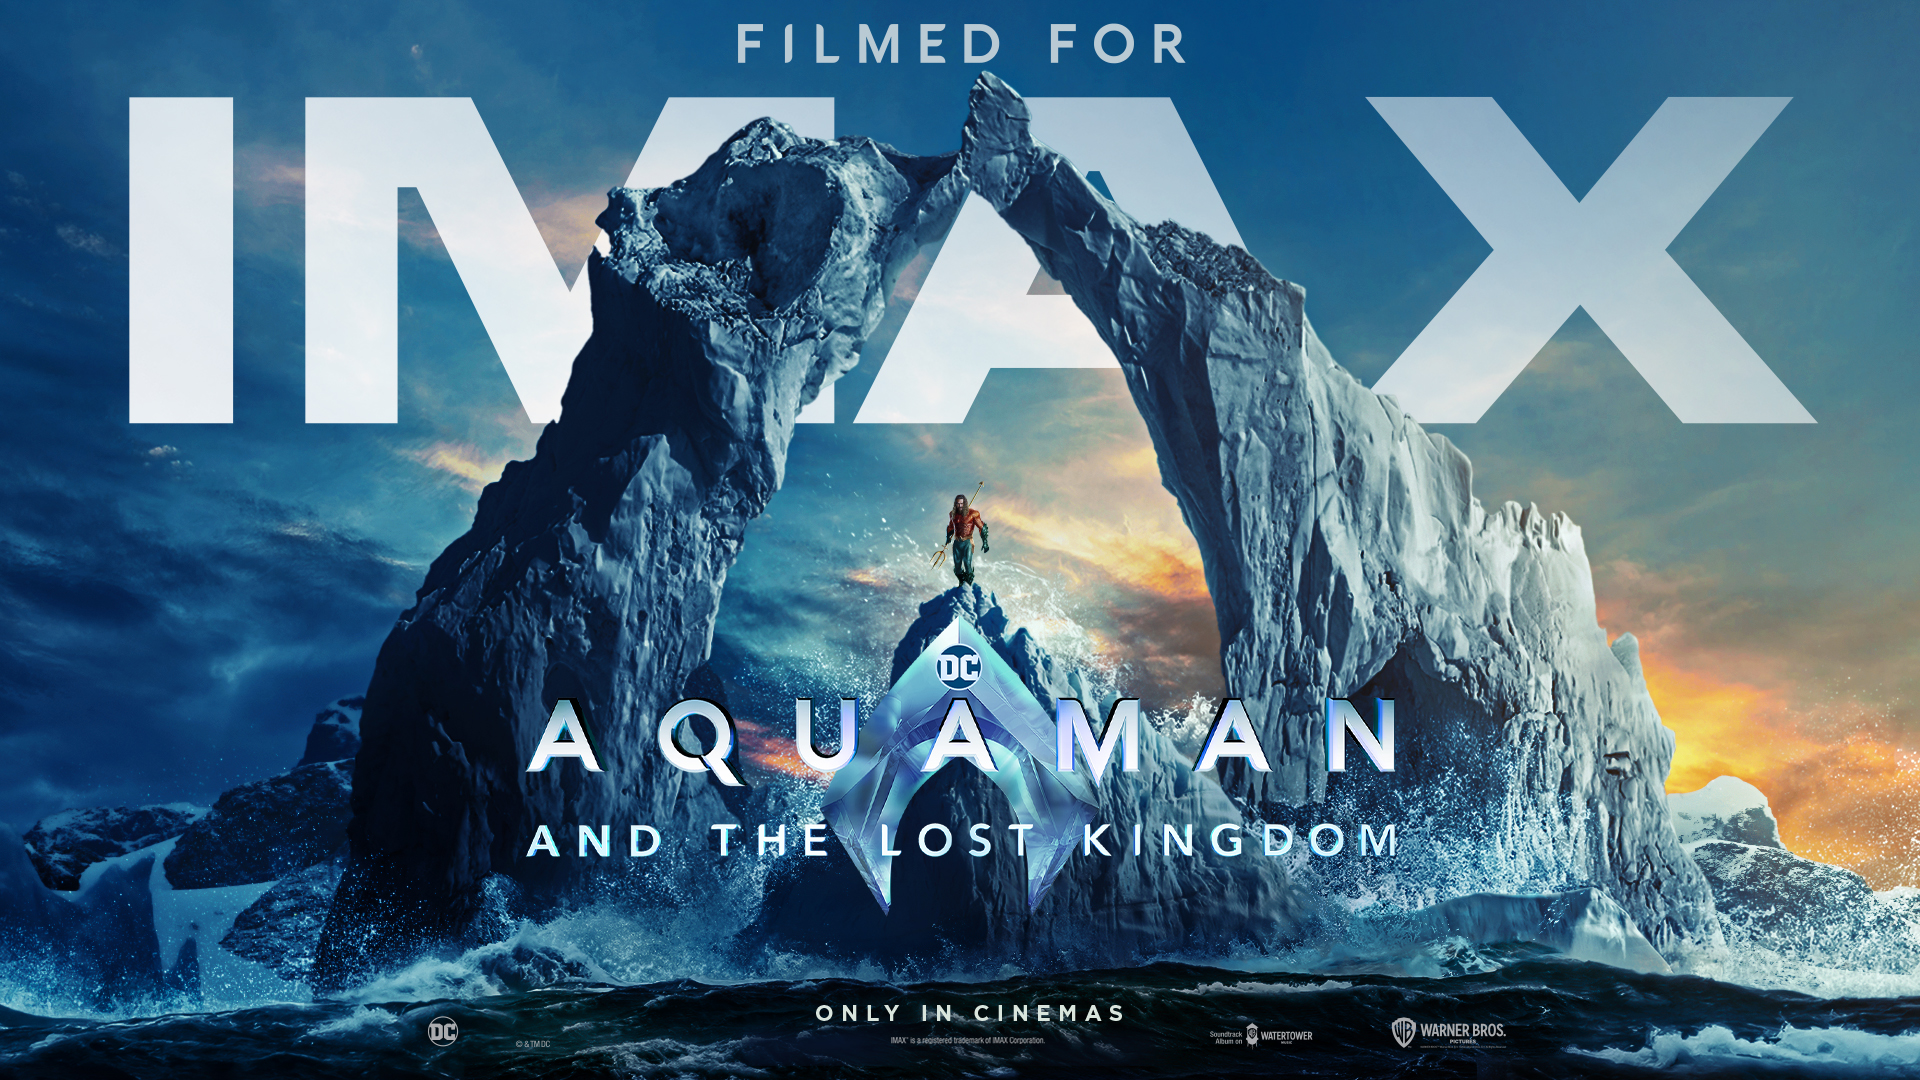 Galaxy Sala đưa người xem bước vào vương quốc Atlantis “hơn cả chân thực” qua màn hình IMAX Laser - Ảnh 1.